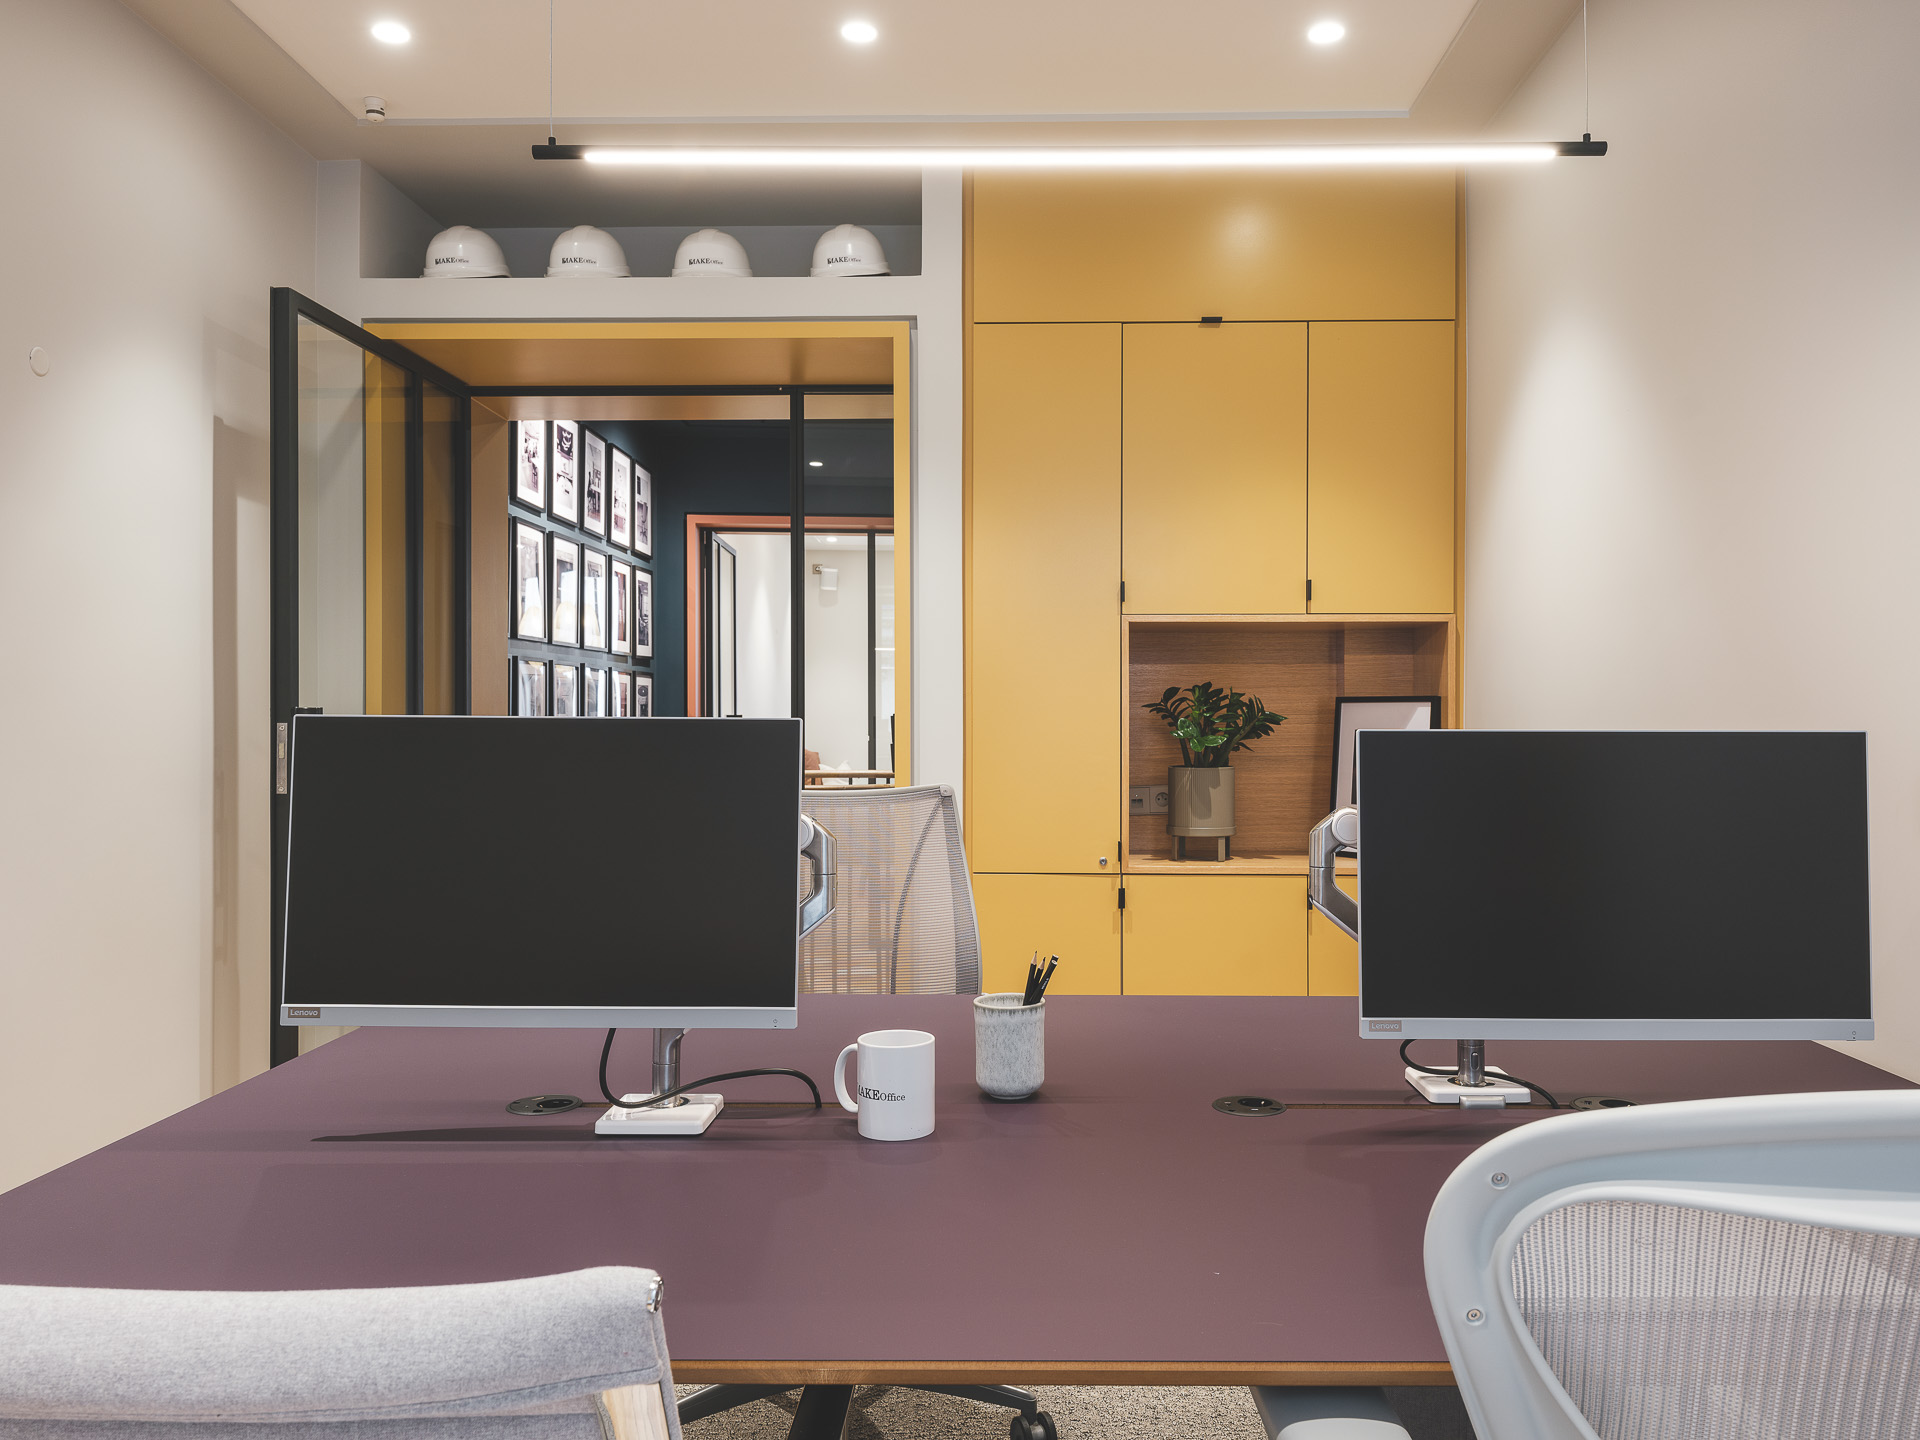 🔥 Optimisation de l'espace d'un des bureaux MAKE Office offrant une idée de mélange de couleurs. 🔥 - Bureaux dans les tons gris, jaune et violet - 2 support écrans - Bench bureau et salle de réunion - cloison acoustique ... 📸 @alexispaoli